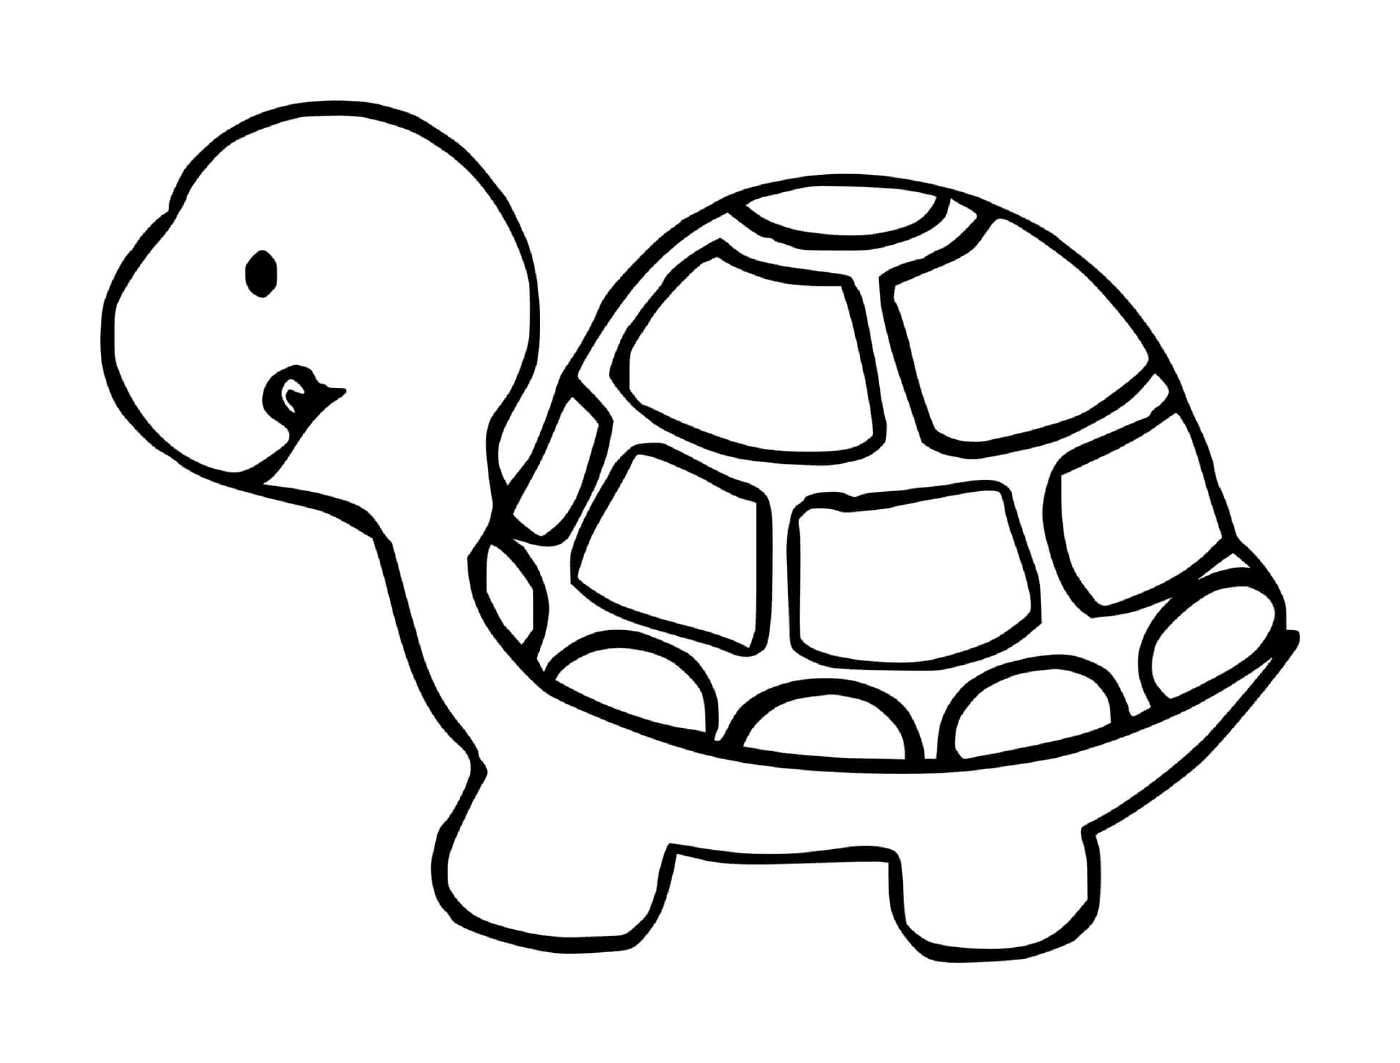  Профиль черепахи 